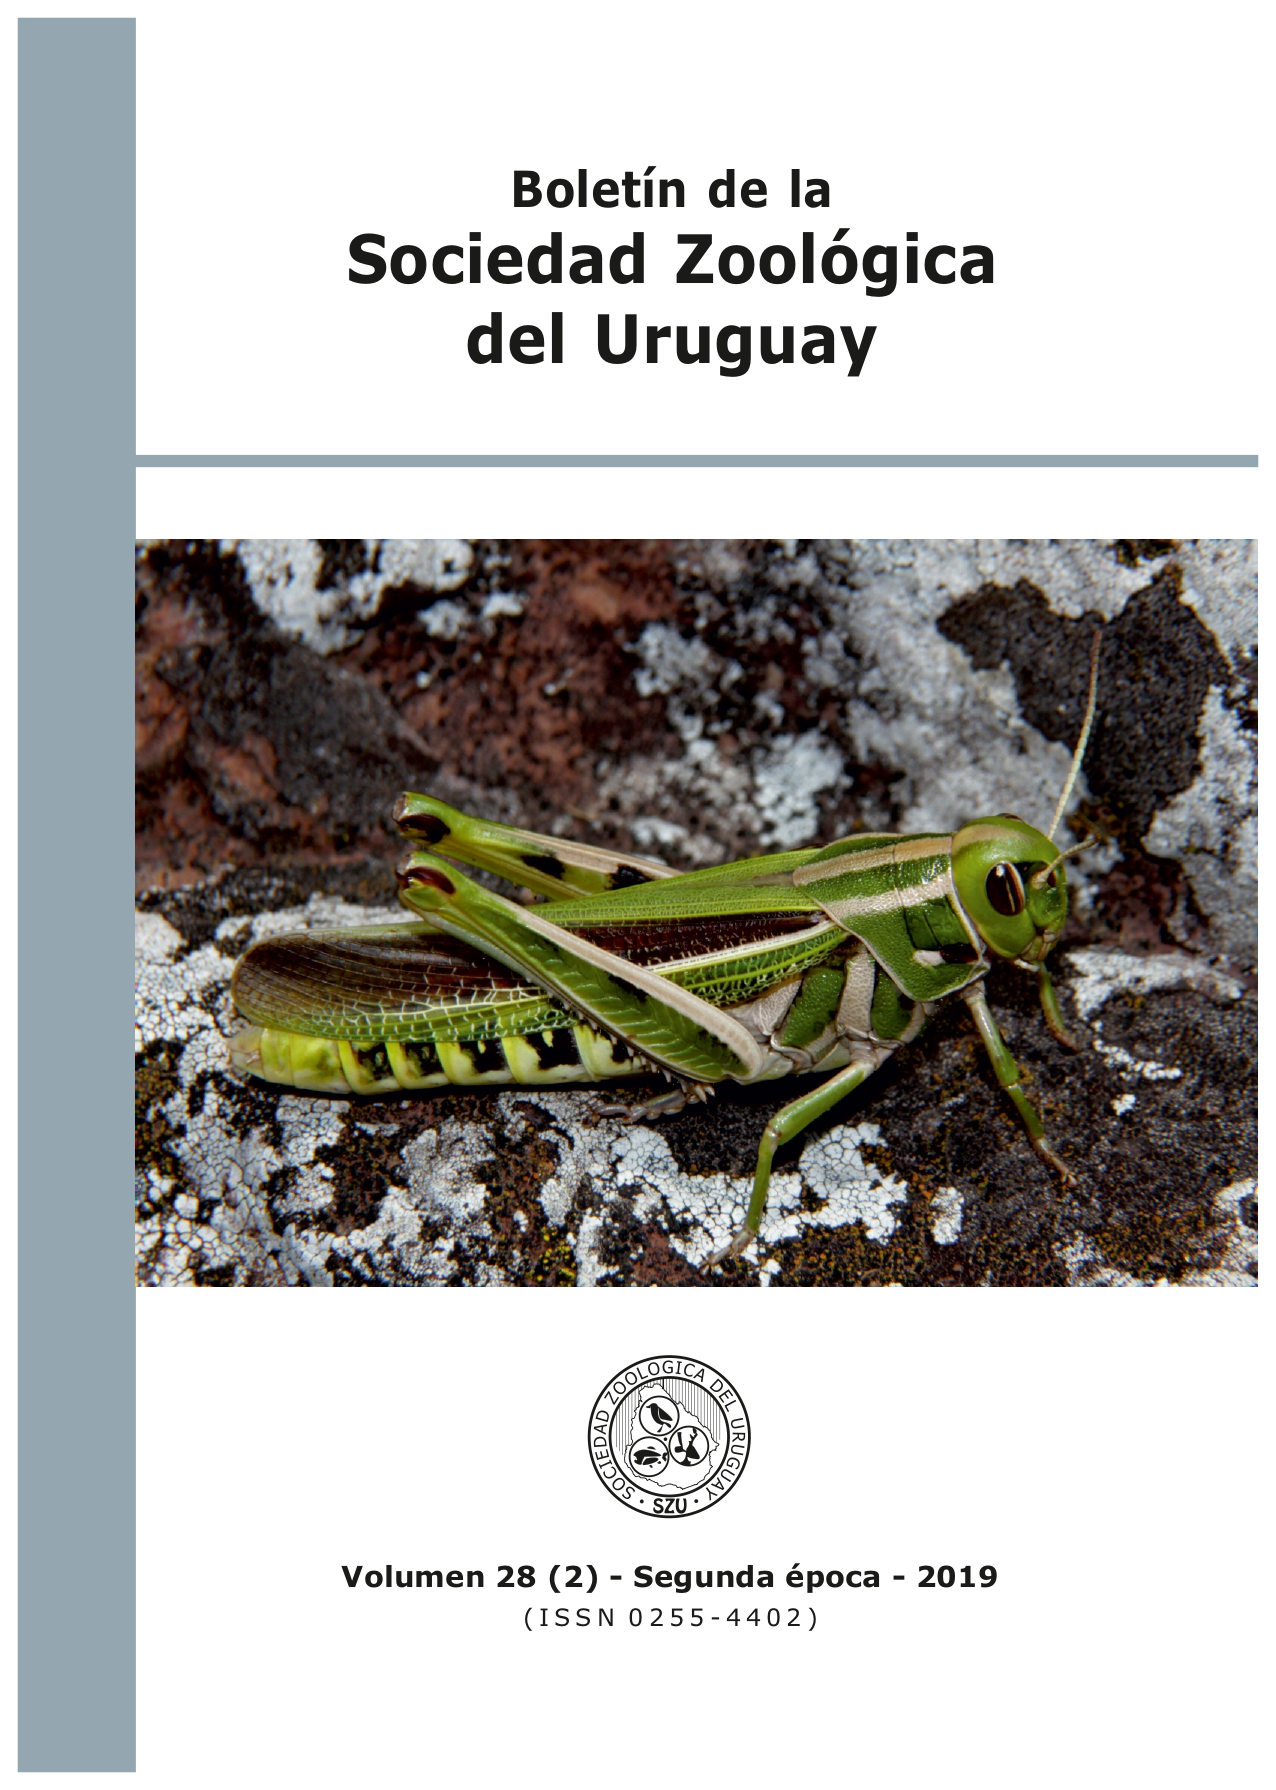 					Visualizar v. 28 n. 2 (2019): Boletín de la Sociedad Zoológica del Uruguay
				